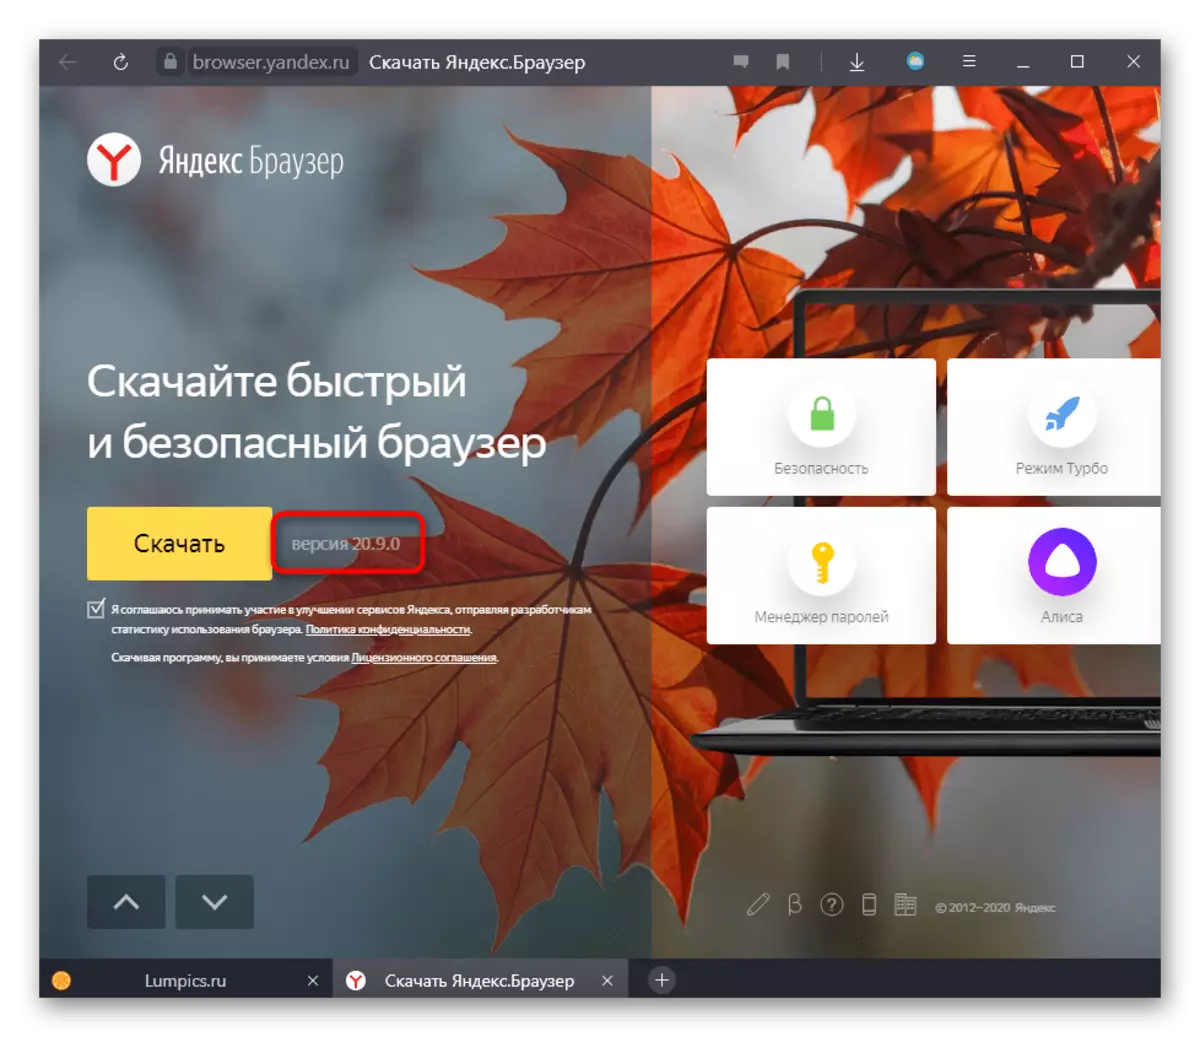 Periksa versi Yandex.Bauser di website resmi